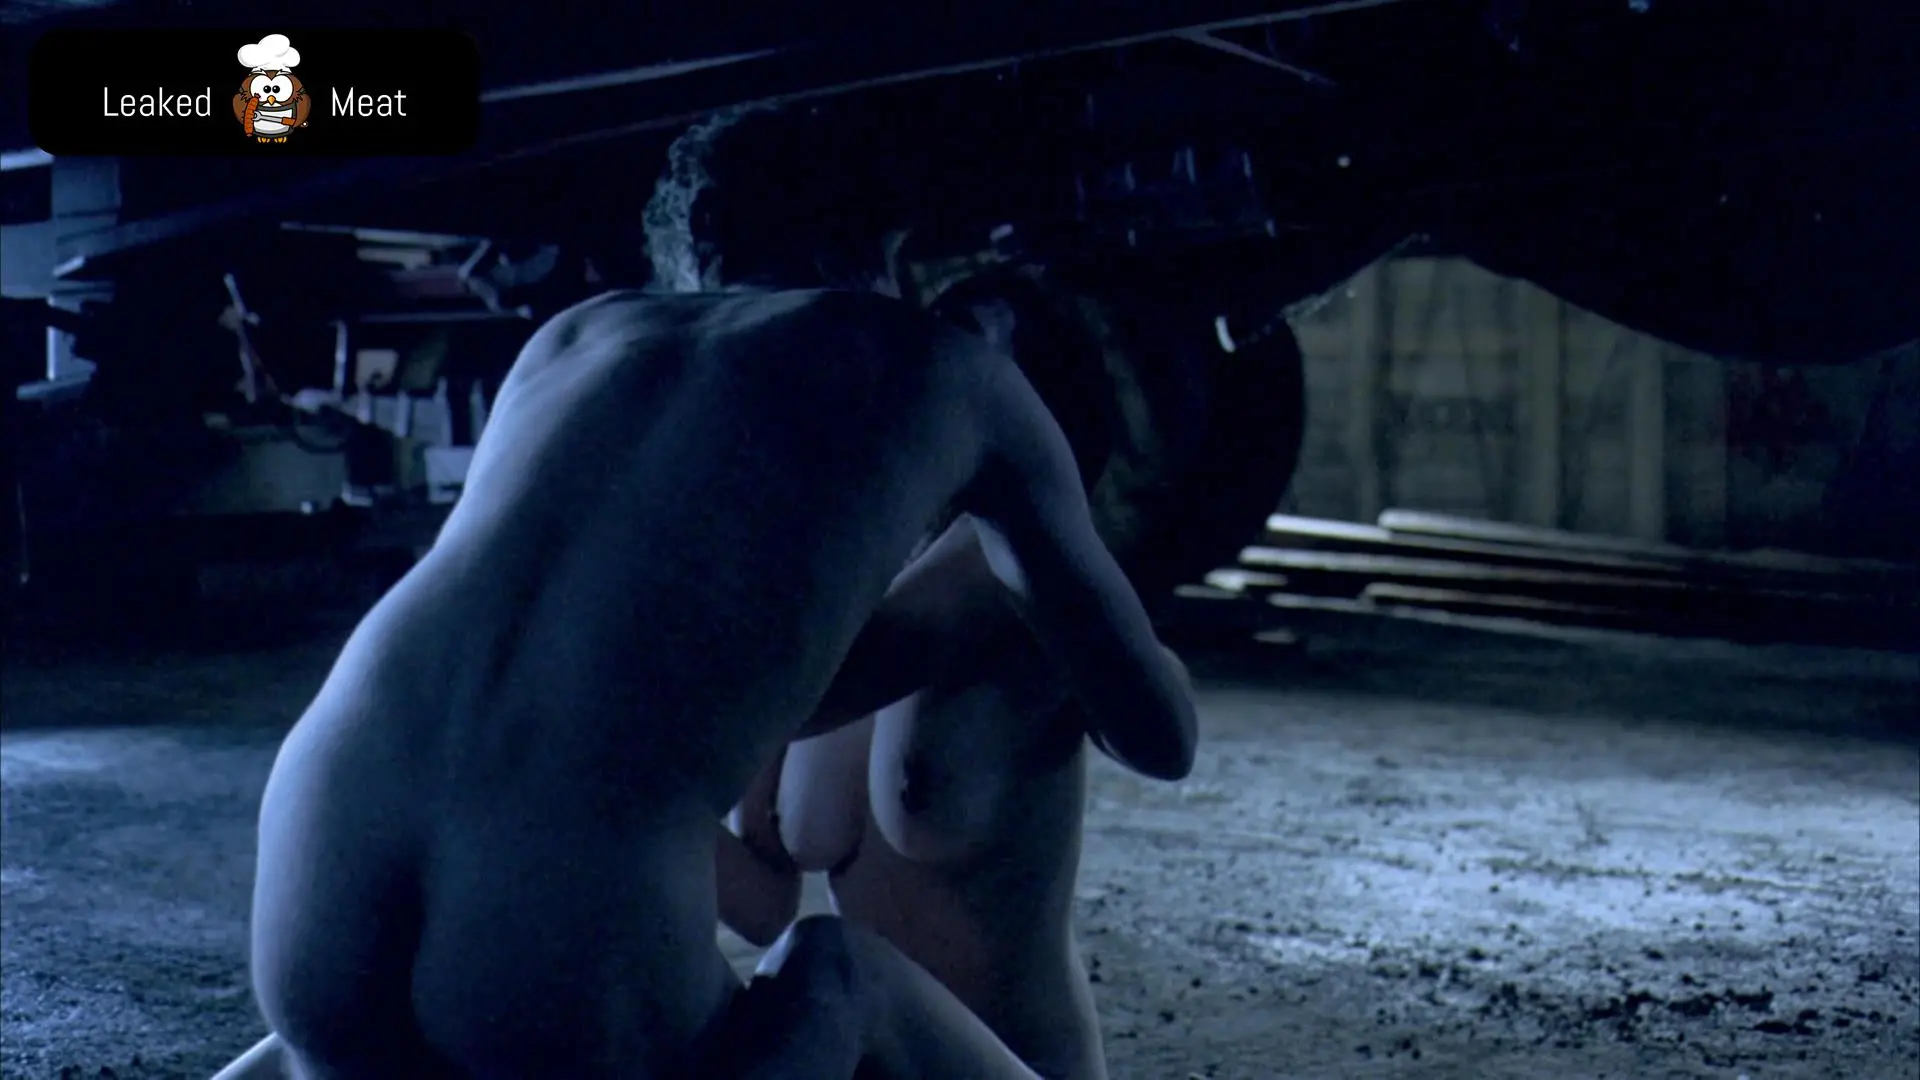 Ewan McGregor has had multiple scenes of full frontal nudity in various mov...